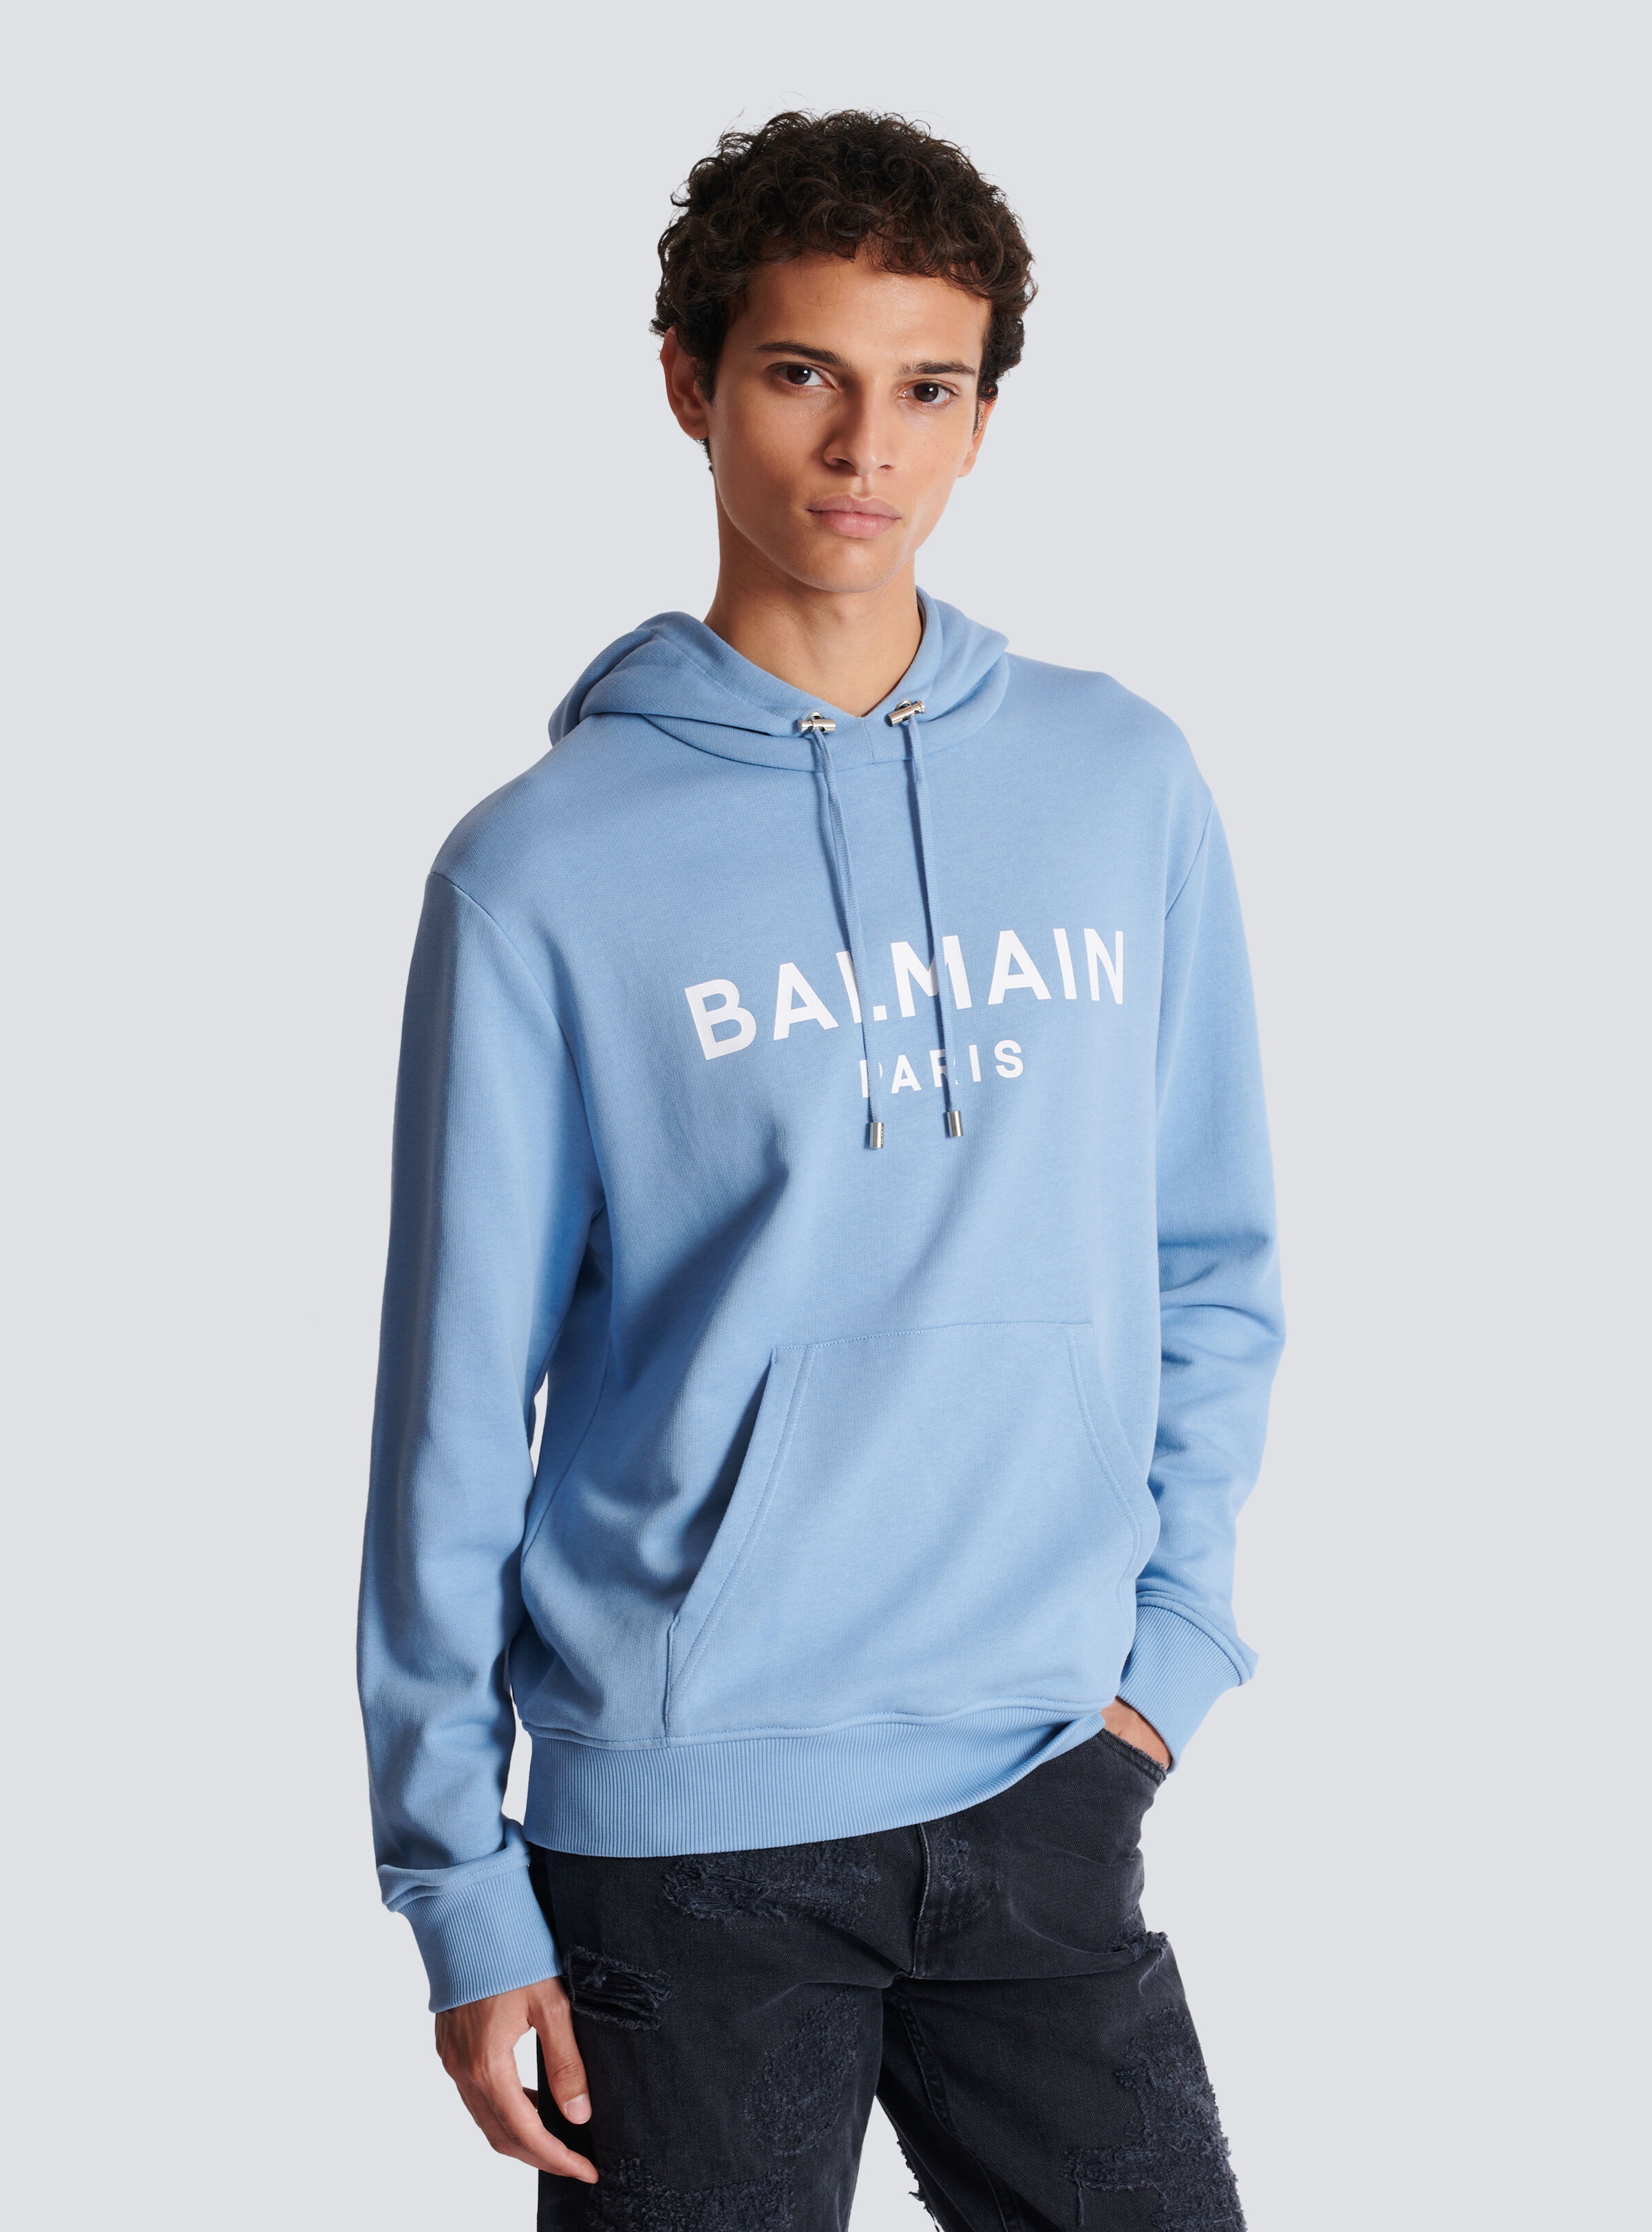 Balmain Paris hoodie - 6